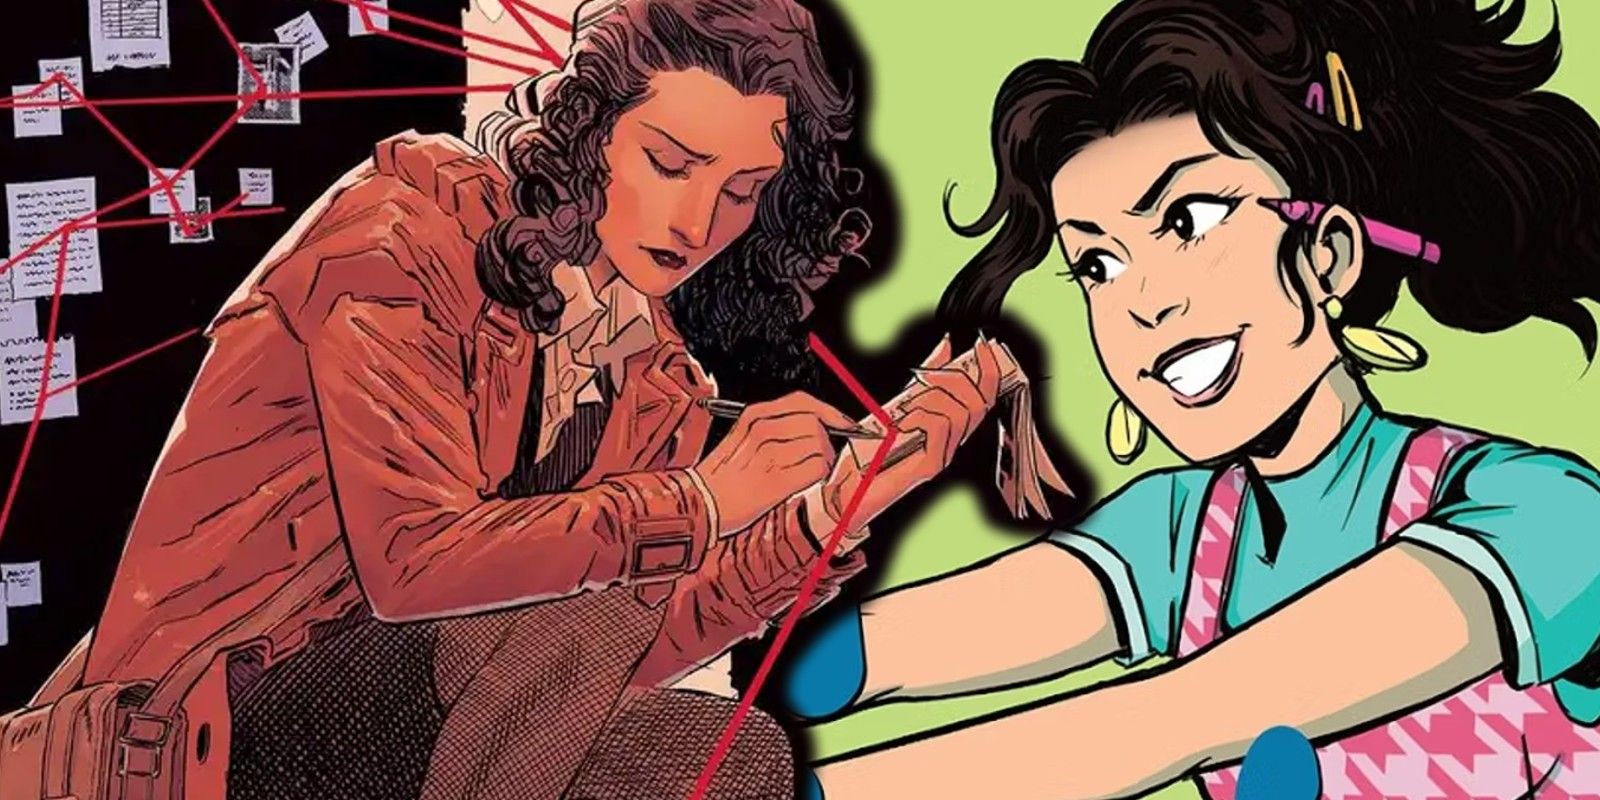 Lois Lane reinventada de GIRL TAKING OVER es la heroína que necesitan los niños (Revisión)